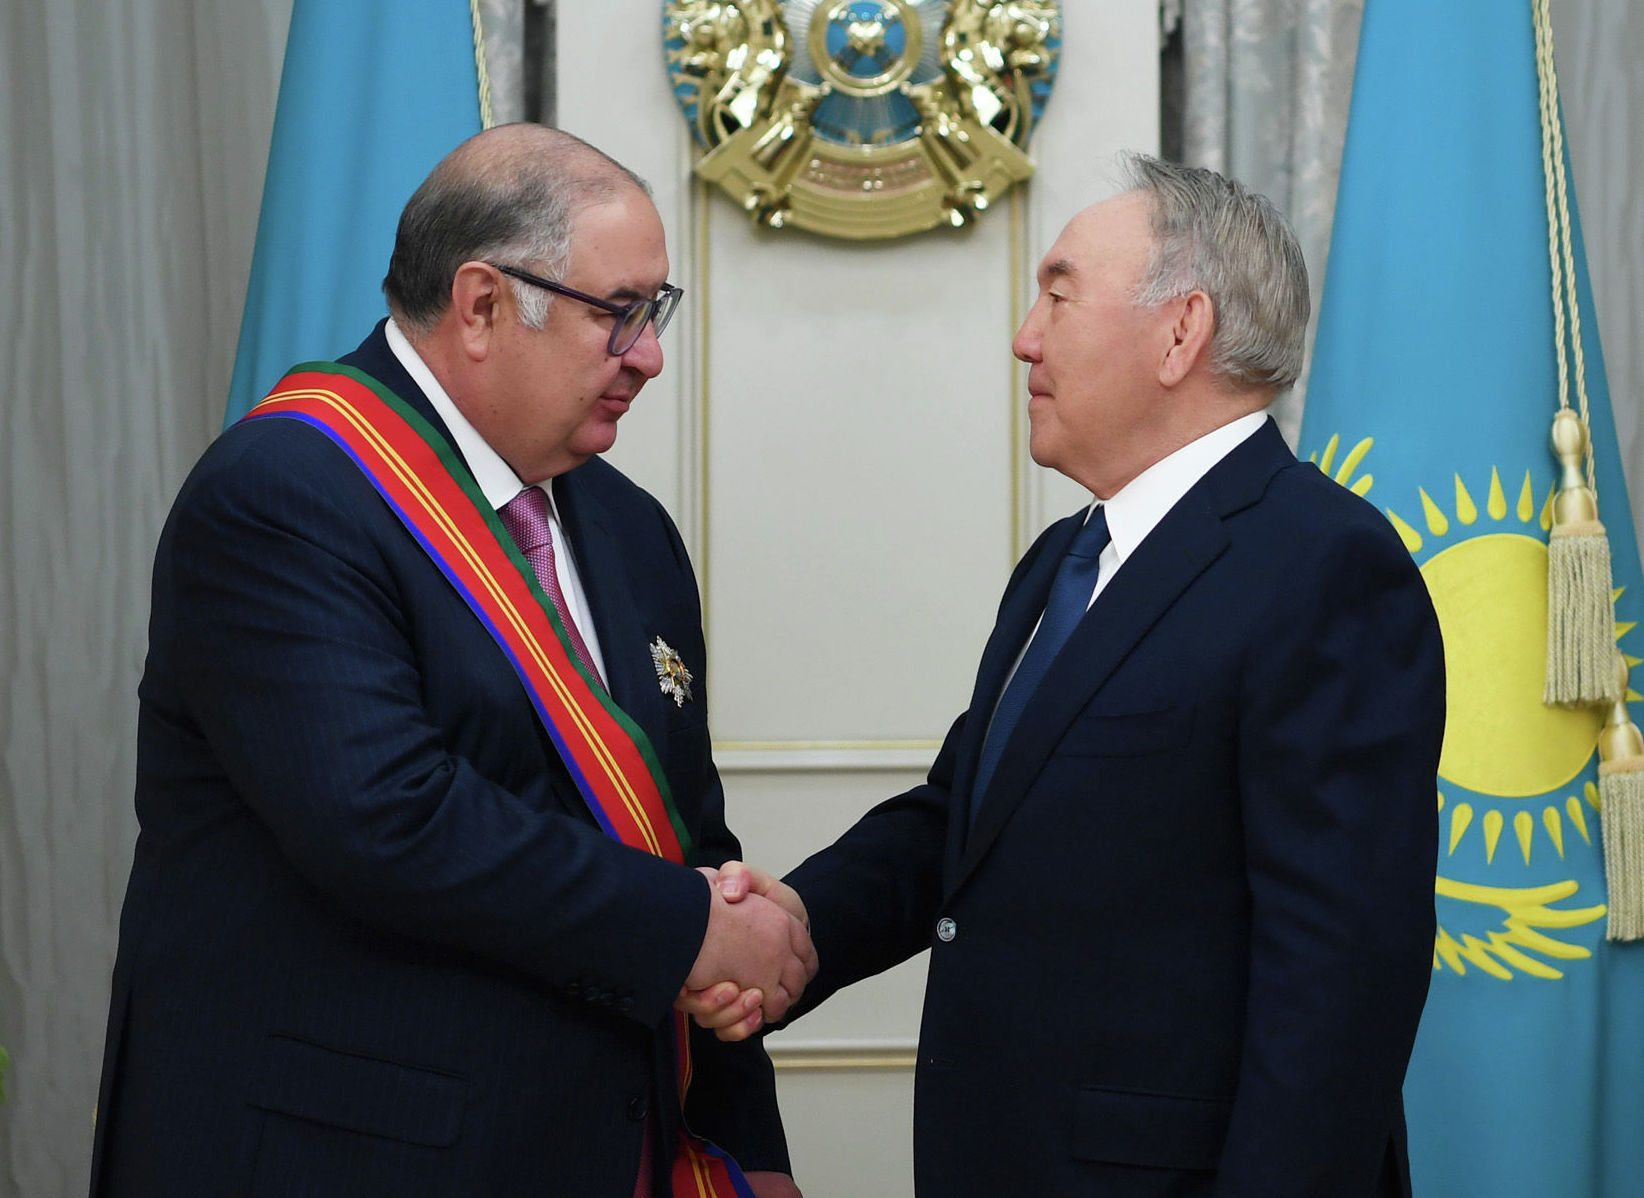 Первый президент Казахстана Нурсултан Назарбаев наградил учредителя компании USM Holdings Алишера Усманова орденом Достық